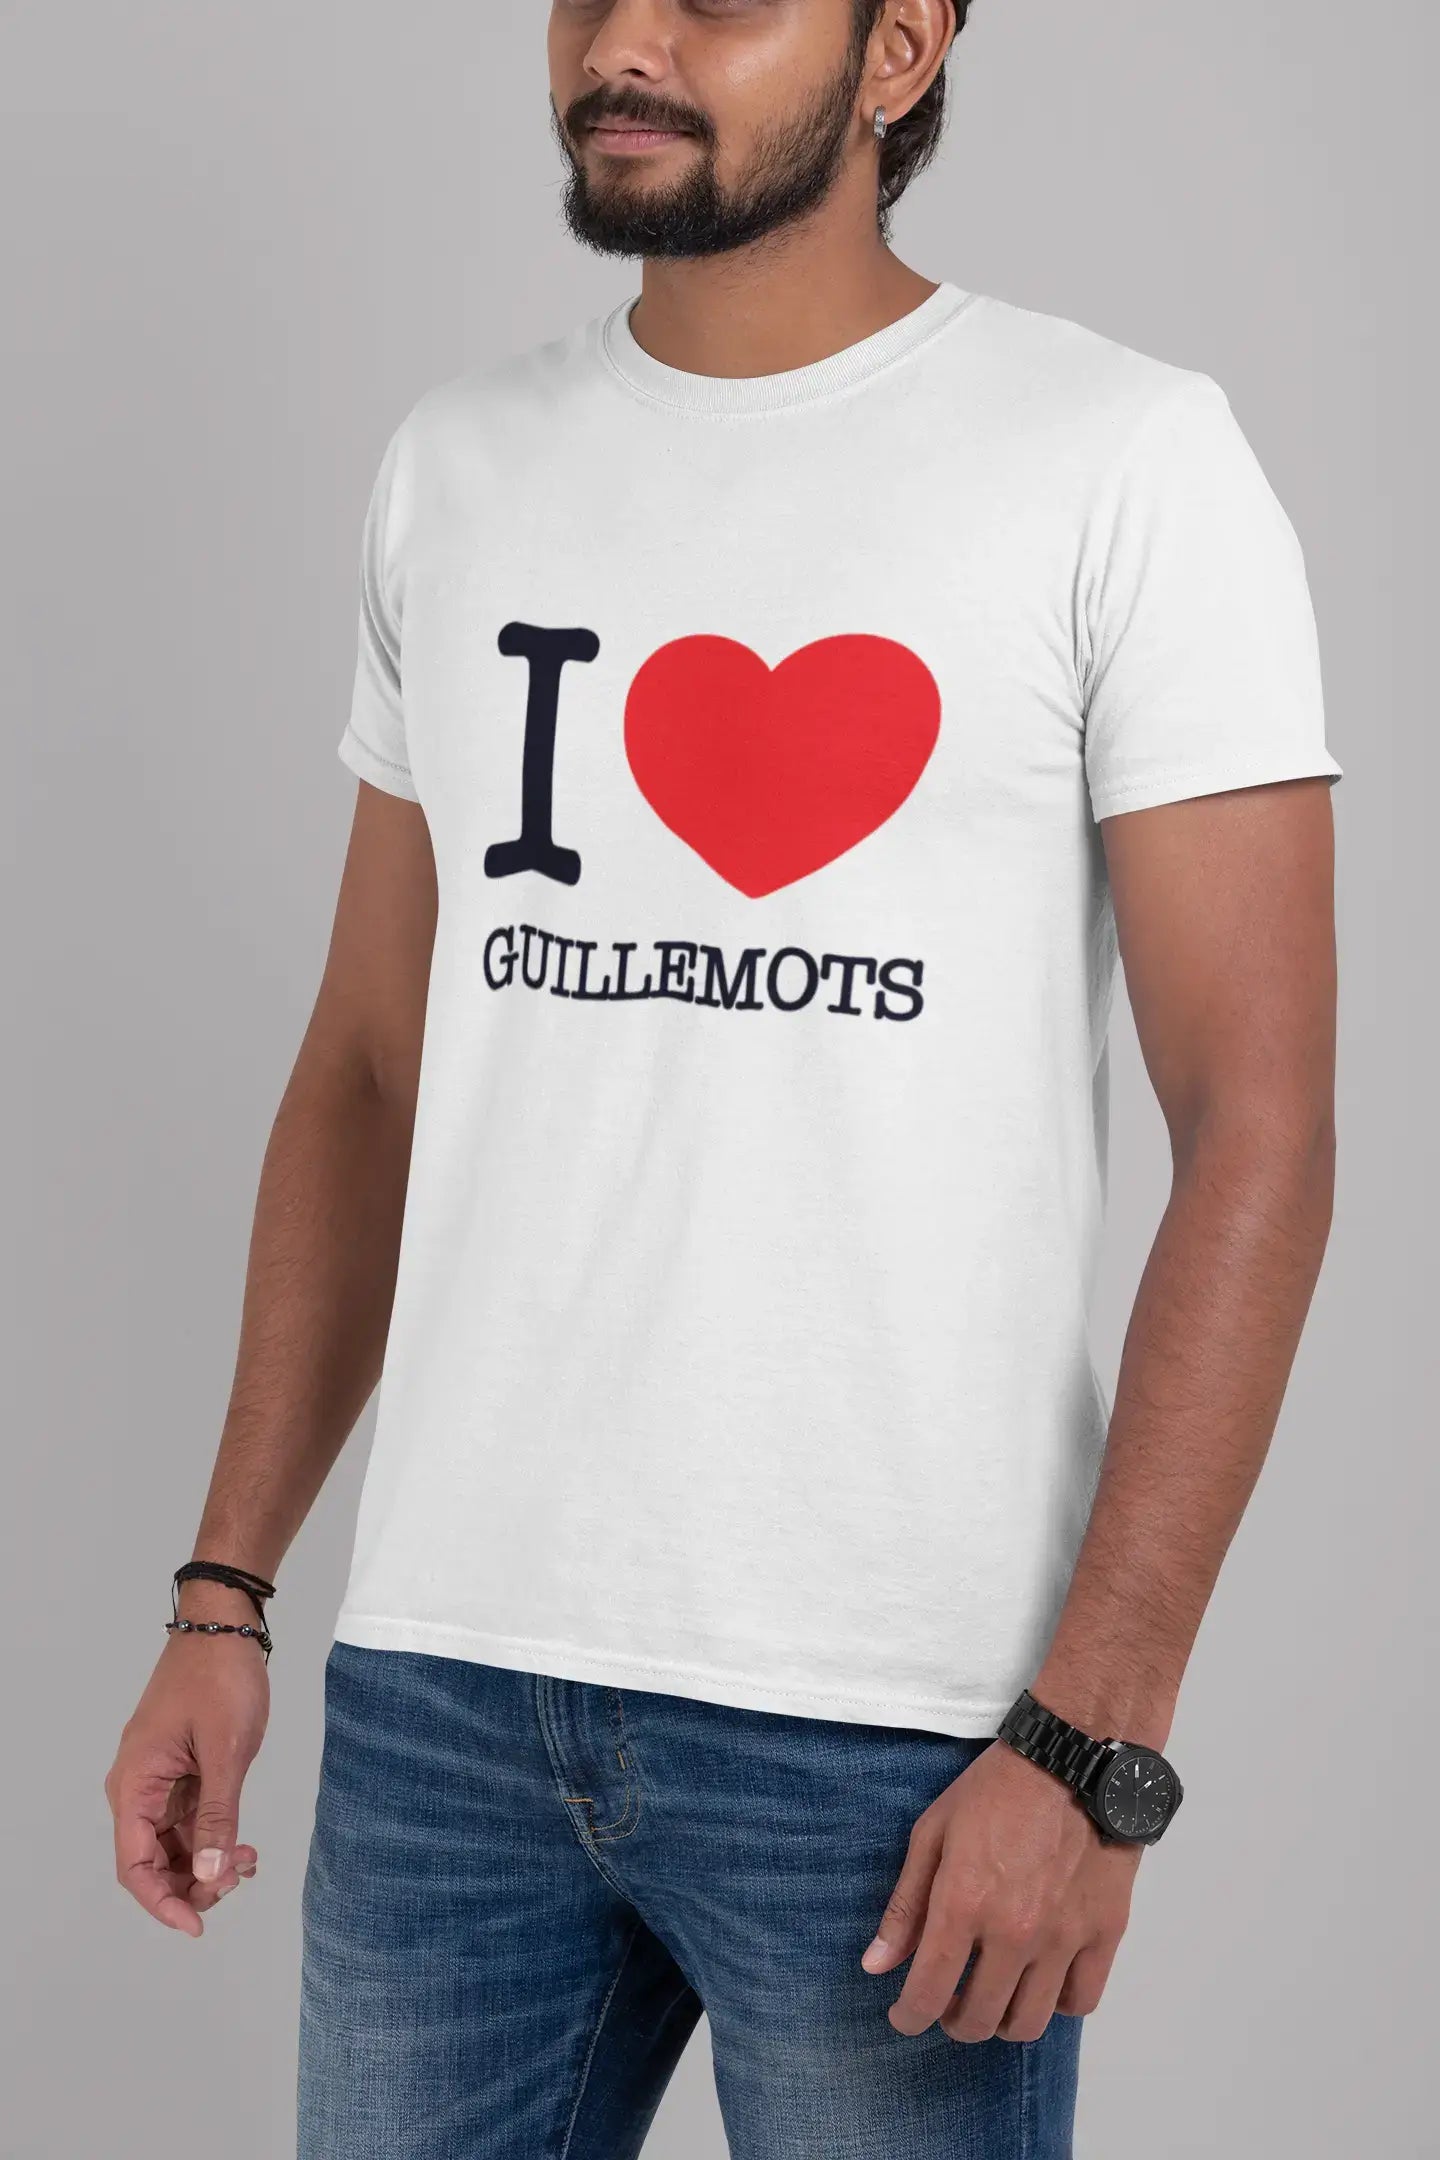 GUILLEMOTS, Men's Short Sleeve Round Neck T-shirt